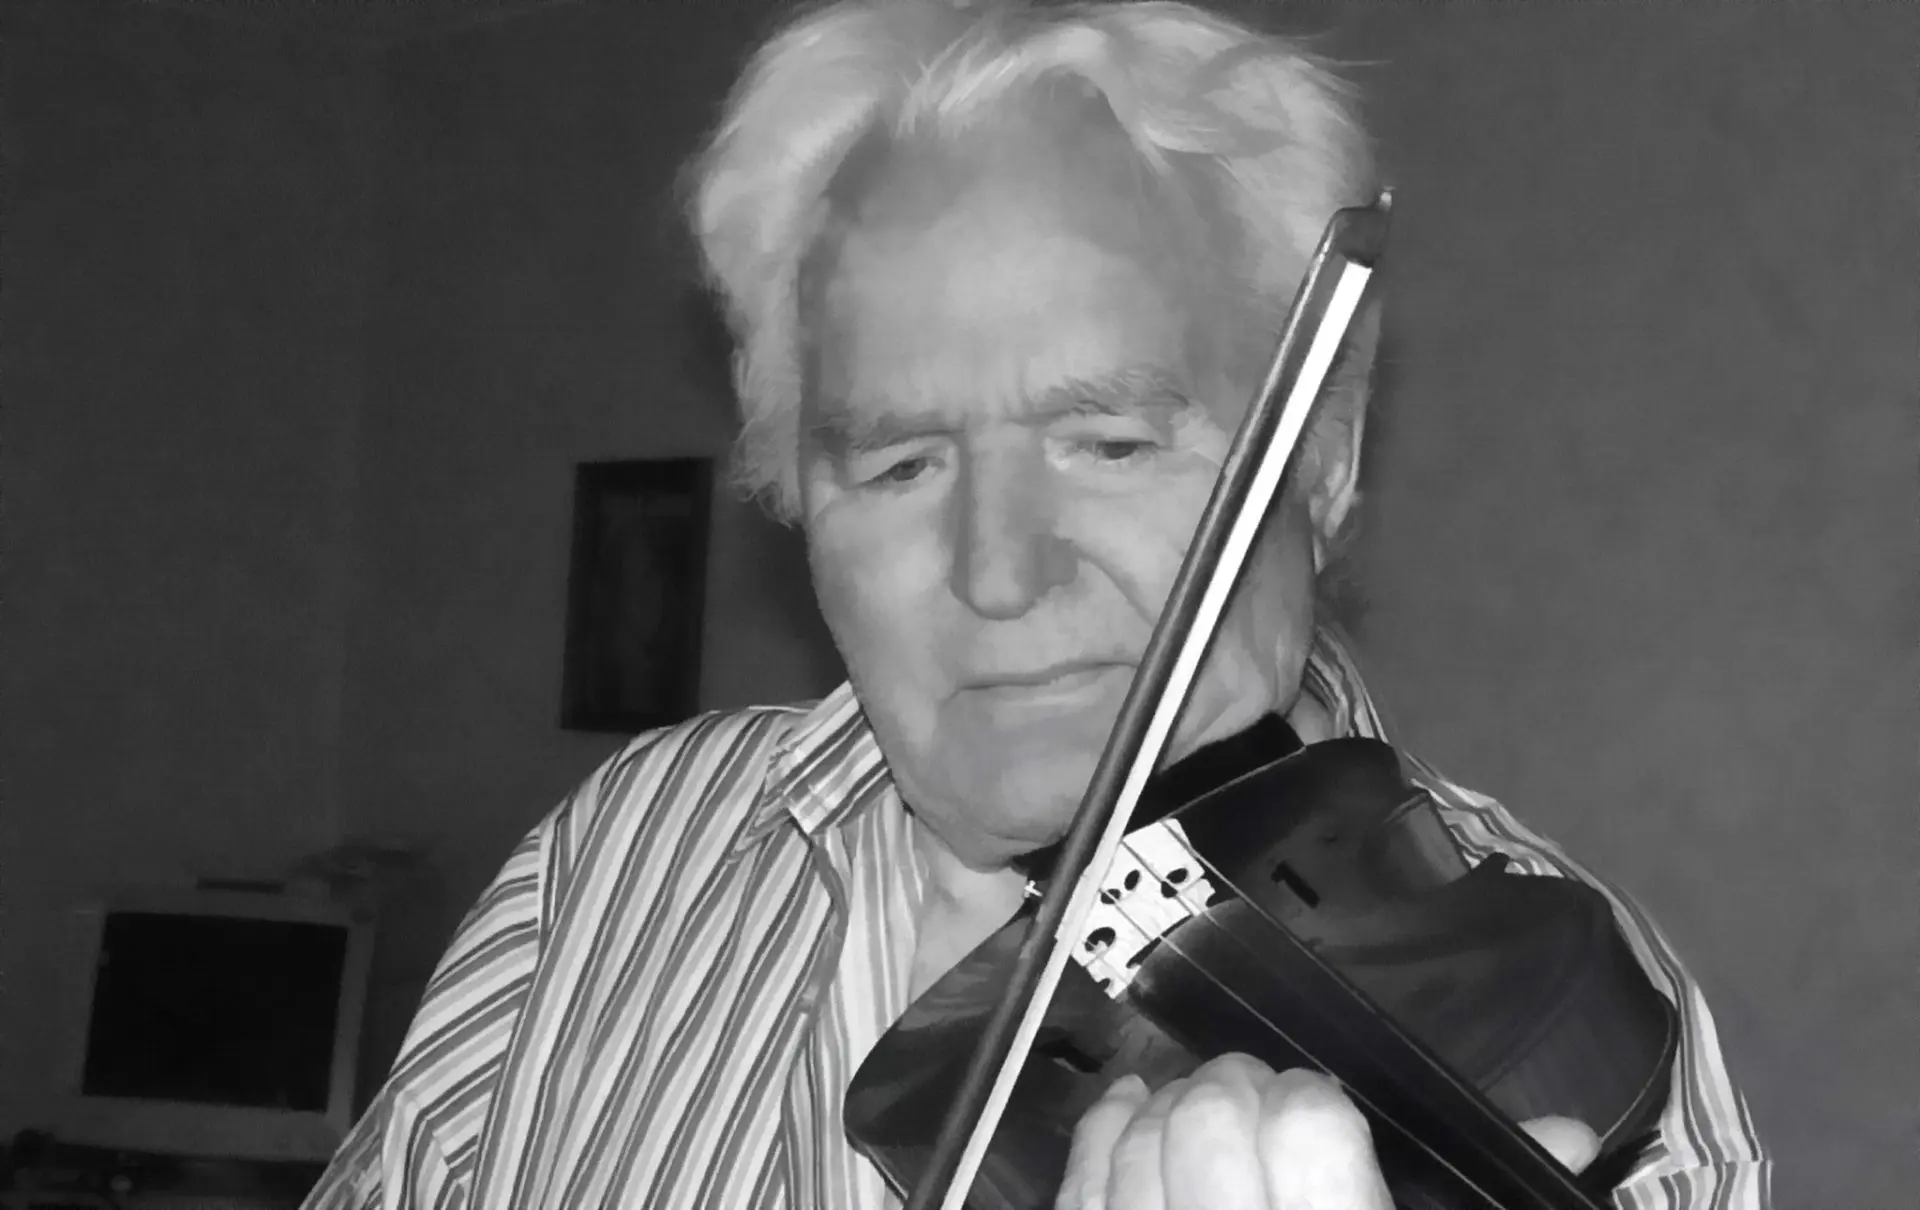 Артур Герман на своей скрипке играет "Аве Марию" в честь памяти племянницы Анны Герман, 2011 год, Германия